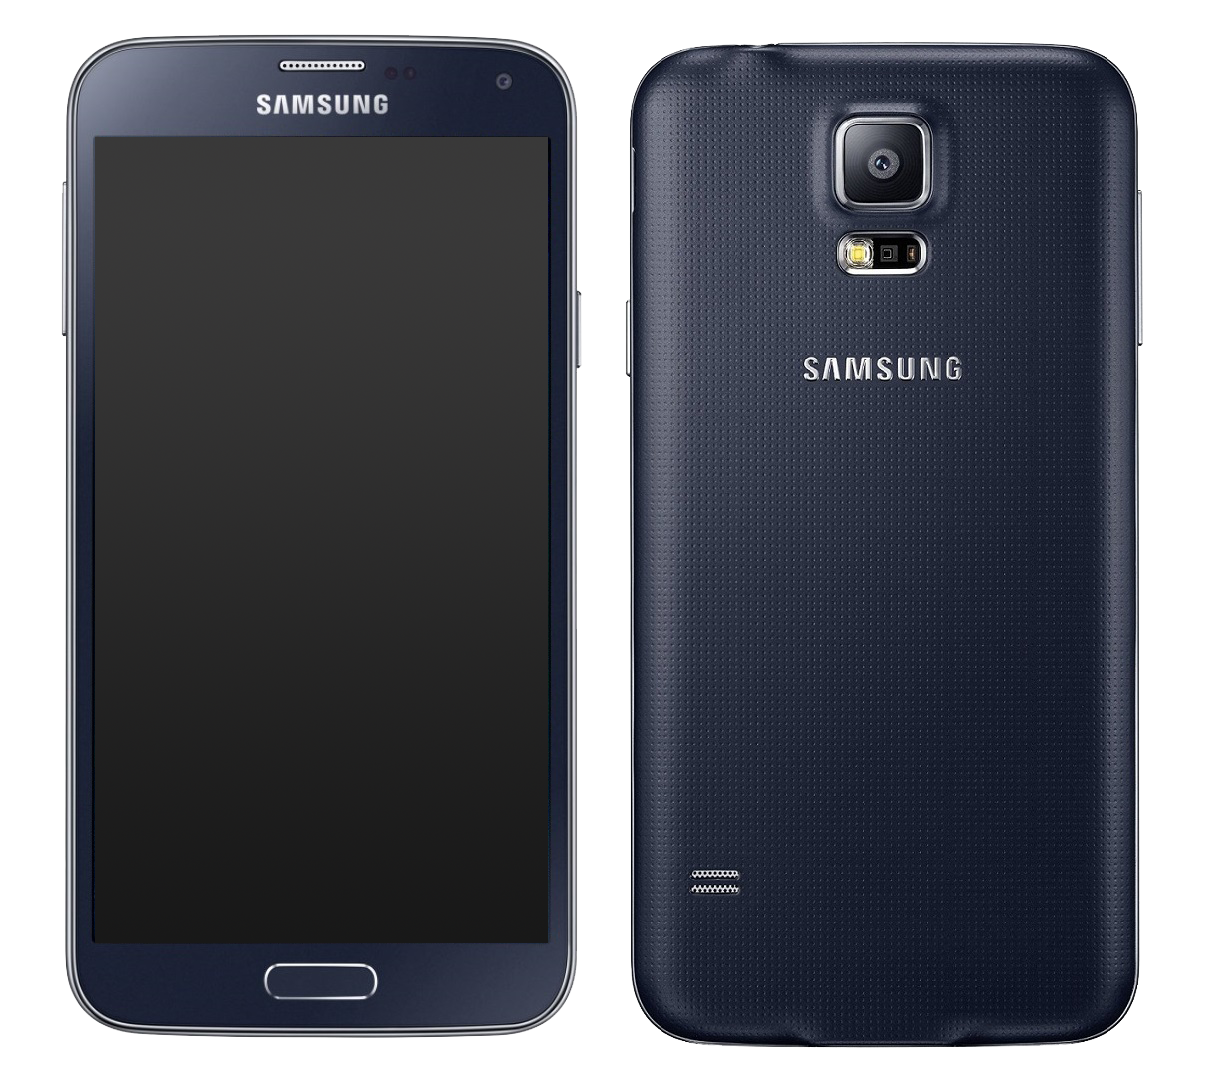 Samsung Galaxy s5 Neo schwarz - Onhe Vertrag